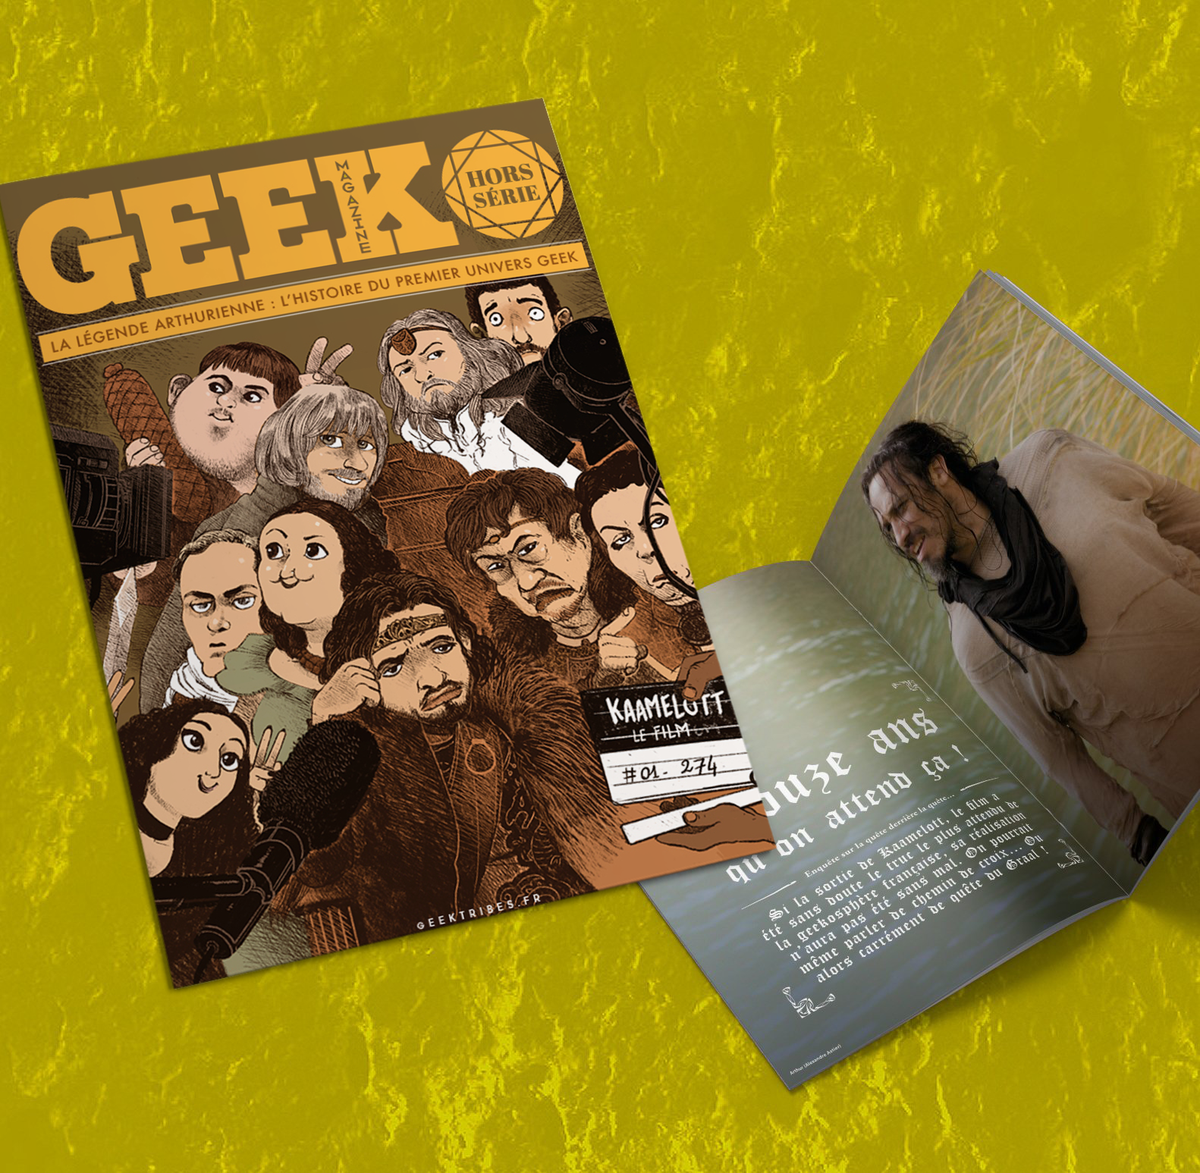 Geek Tribes - Tout sur la culture geek